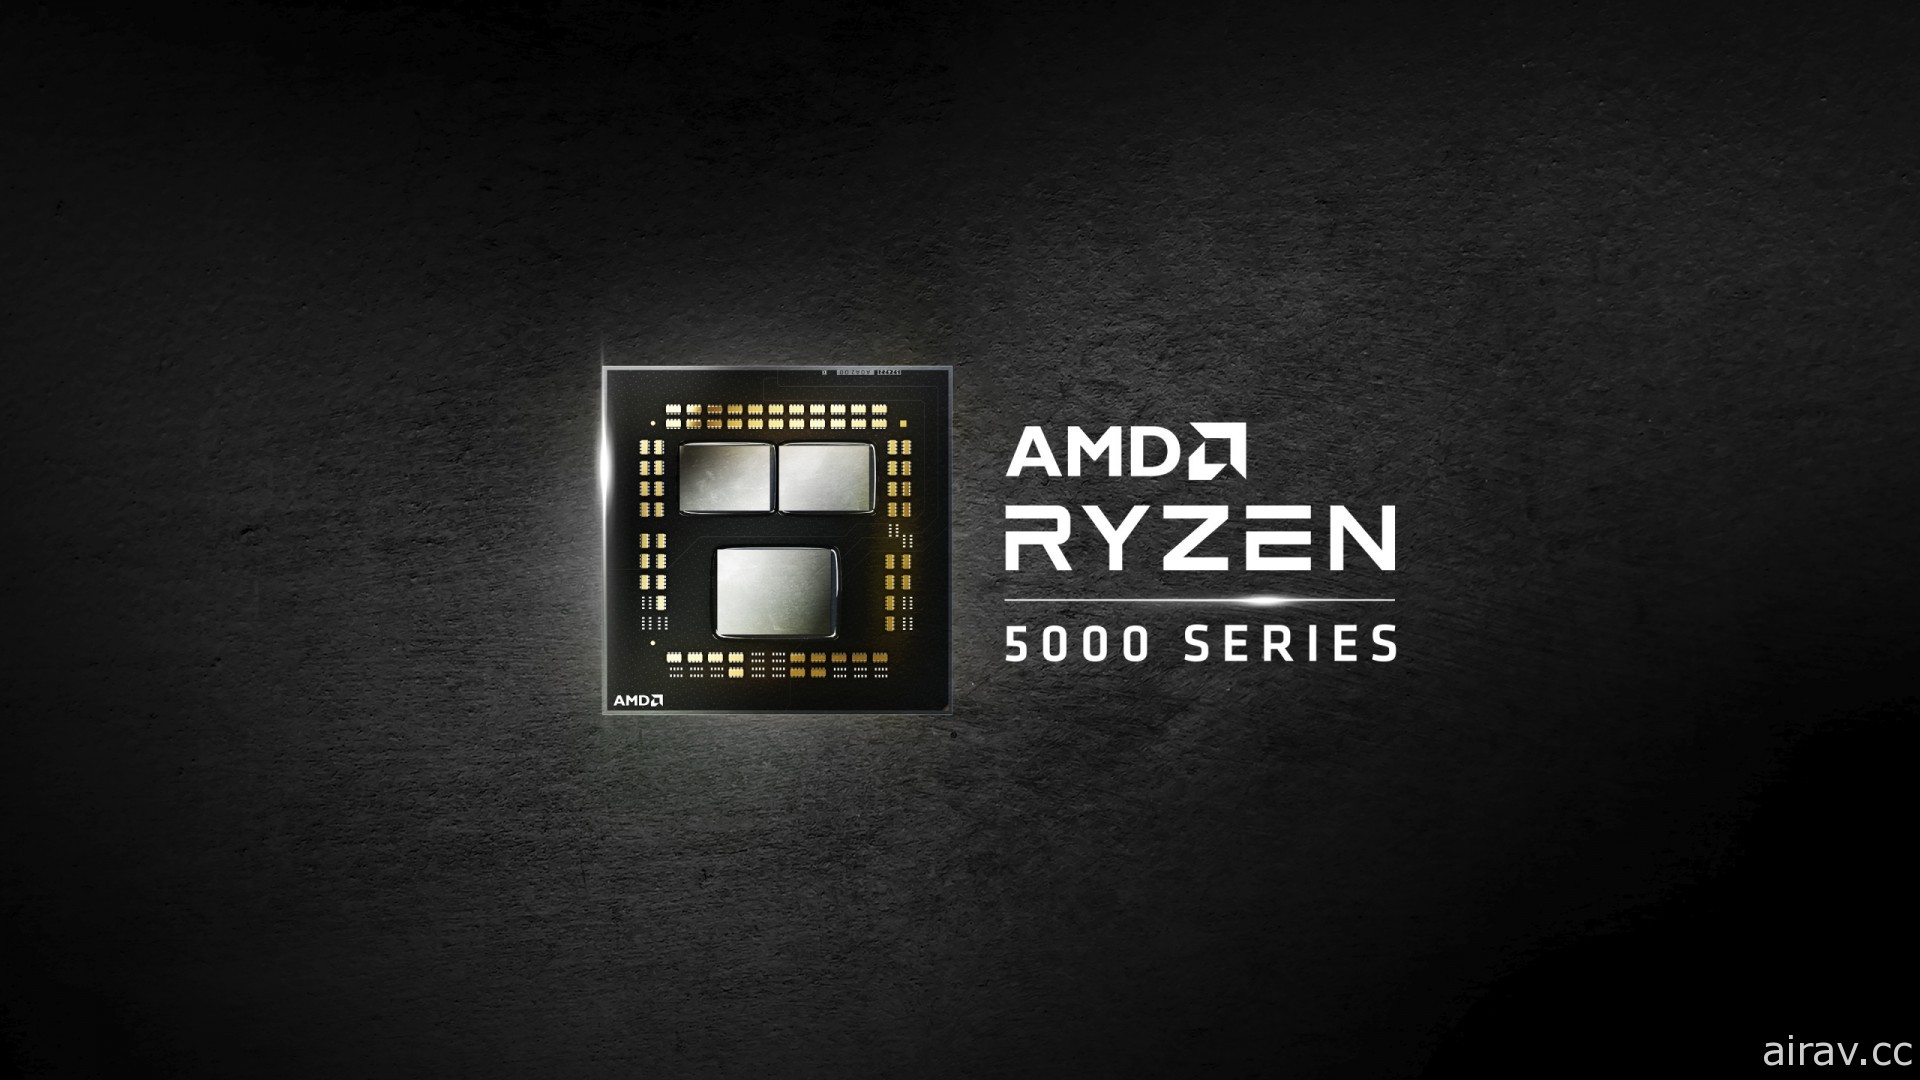 技嘉新 GIGABYTE GAMING 系列笔电亮相 导入 AMD Ryzen 5000H 系列行动处理器